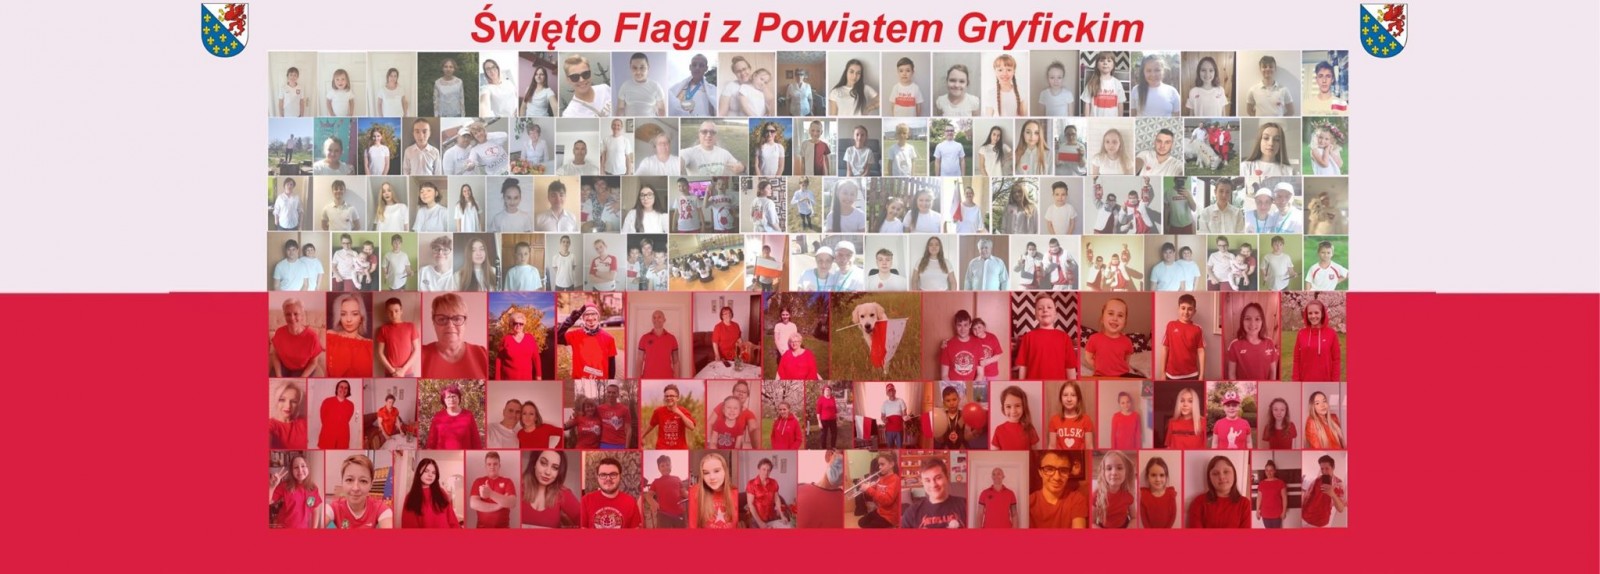 Święto Flagi Rzeczypospolitej Polskiej